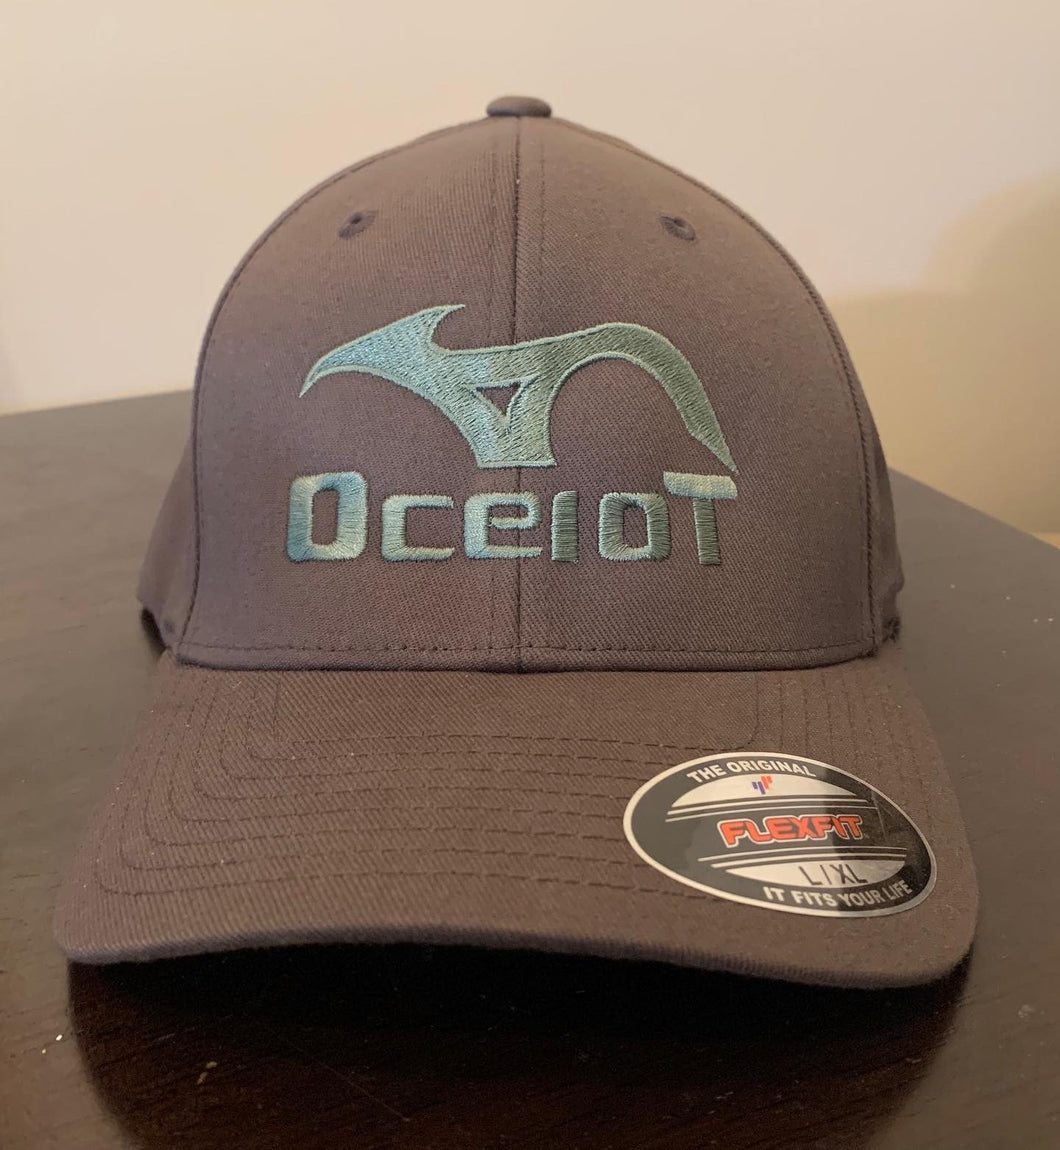 Ocelot Youth Flexfit Hats